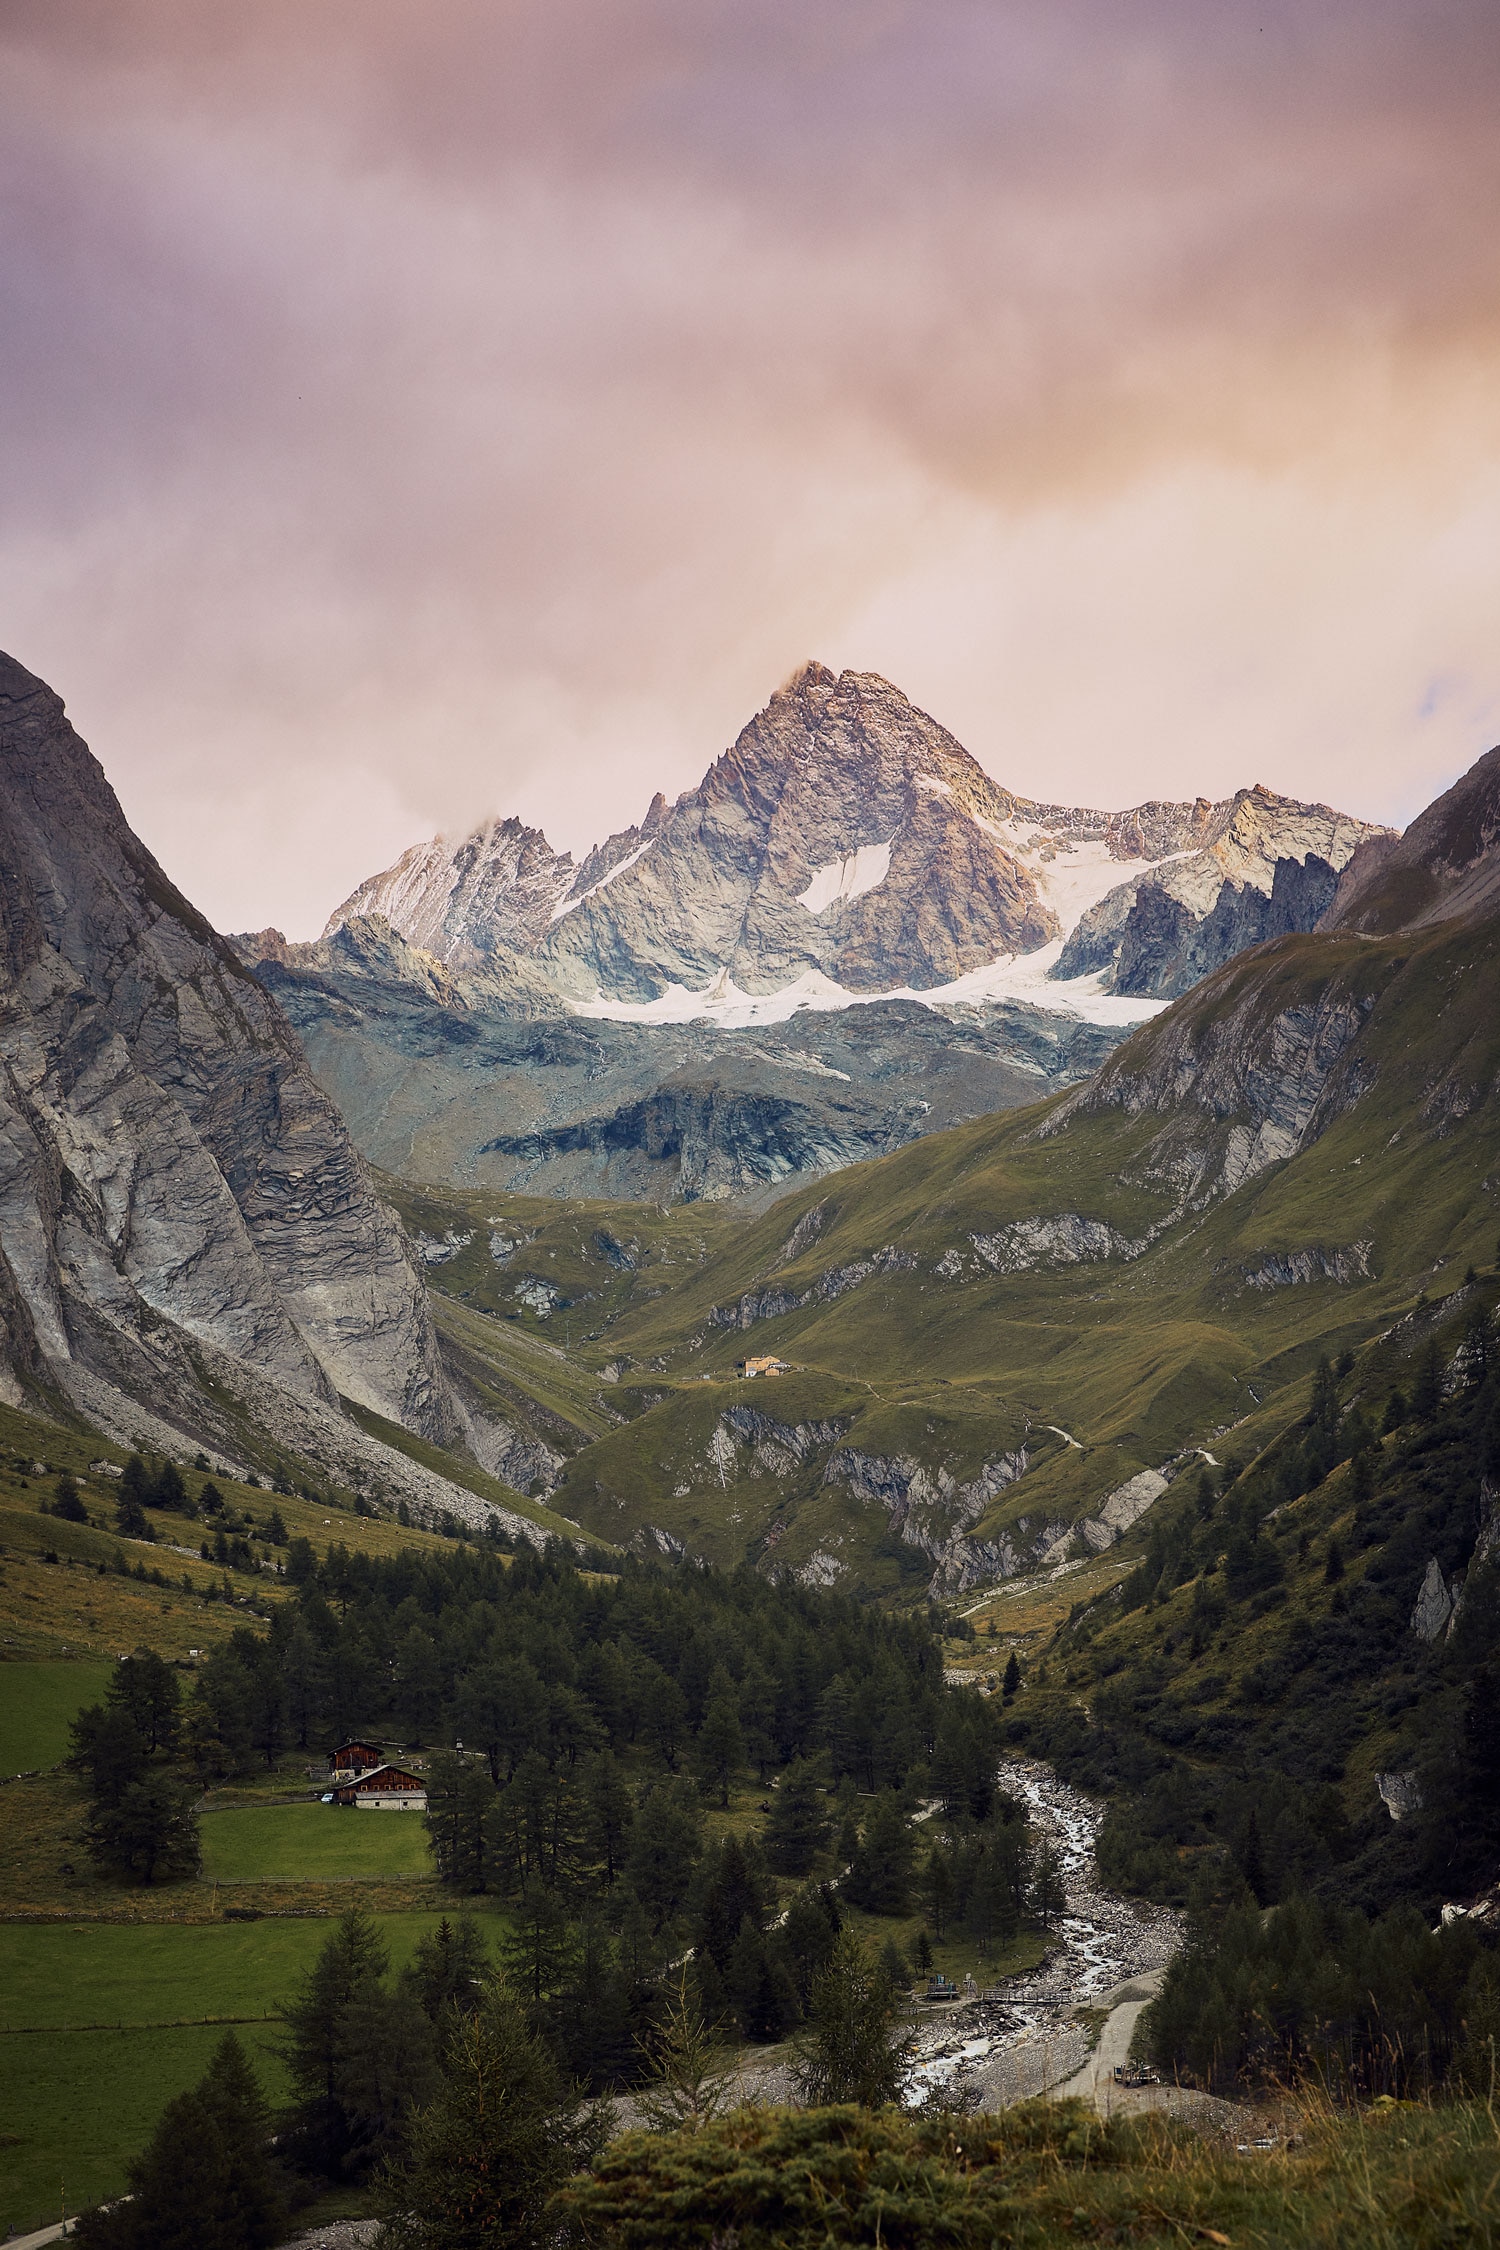 Ein Traum von einem Berg: Von der Osttiroler Seite ist der Doppelgipfel des Großglockners gut zu erkennen, die lange Linie, die von links auf den Gipfel führt, ist der Stüdlgrat, weiter hinten zeigt sich die Glocknerwand. Ziemlich genau in der Bildmitte liegt die Lucknerhütte.